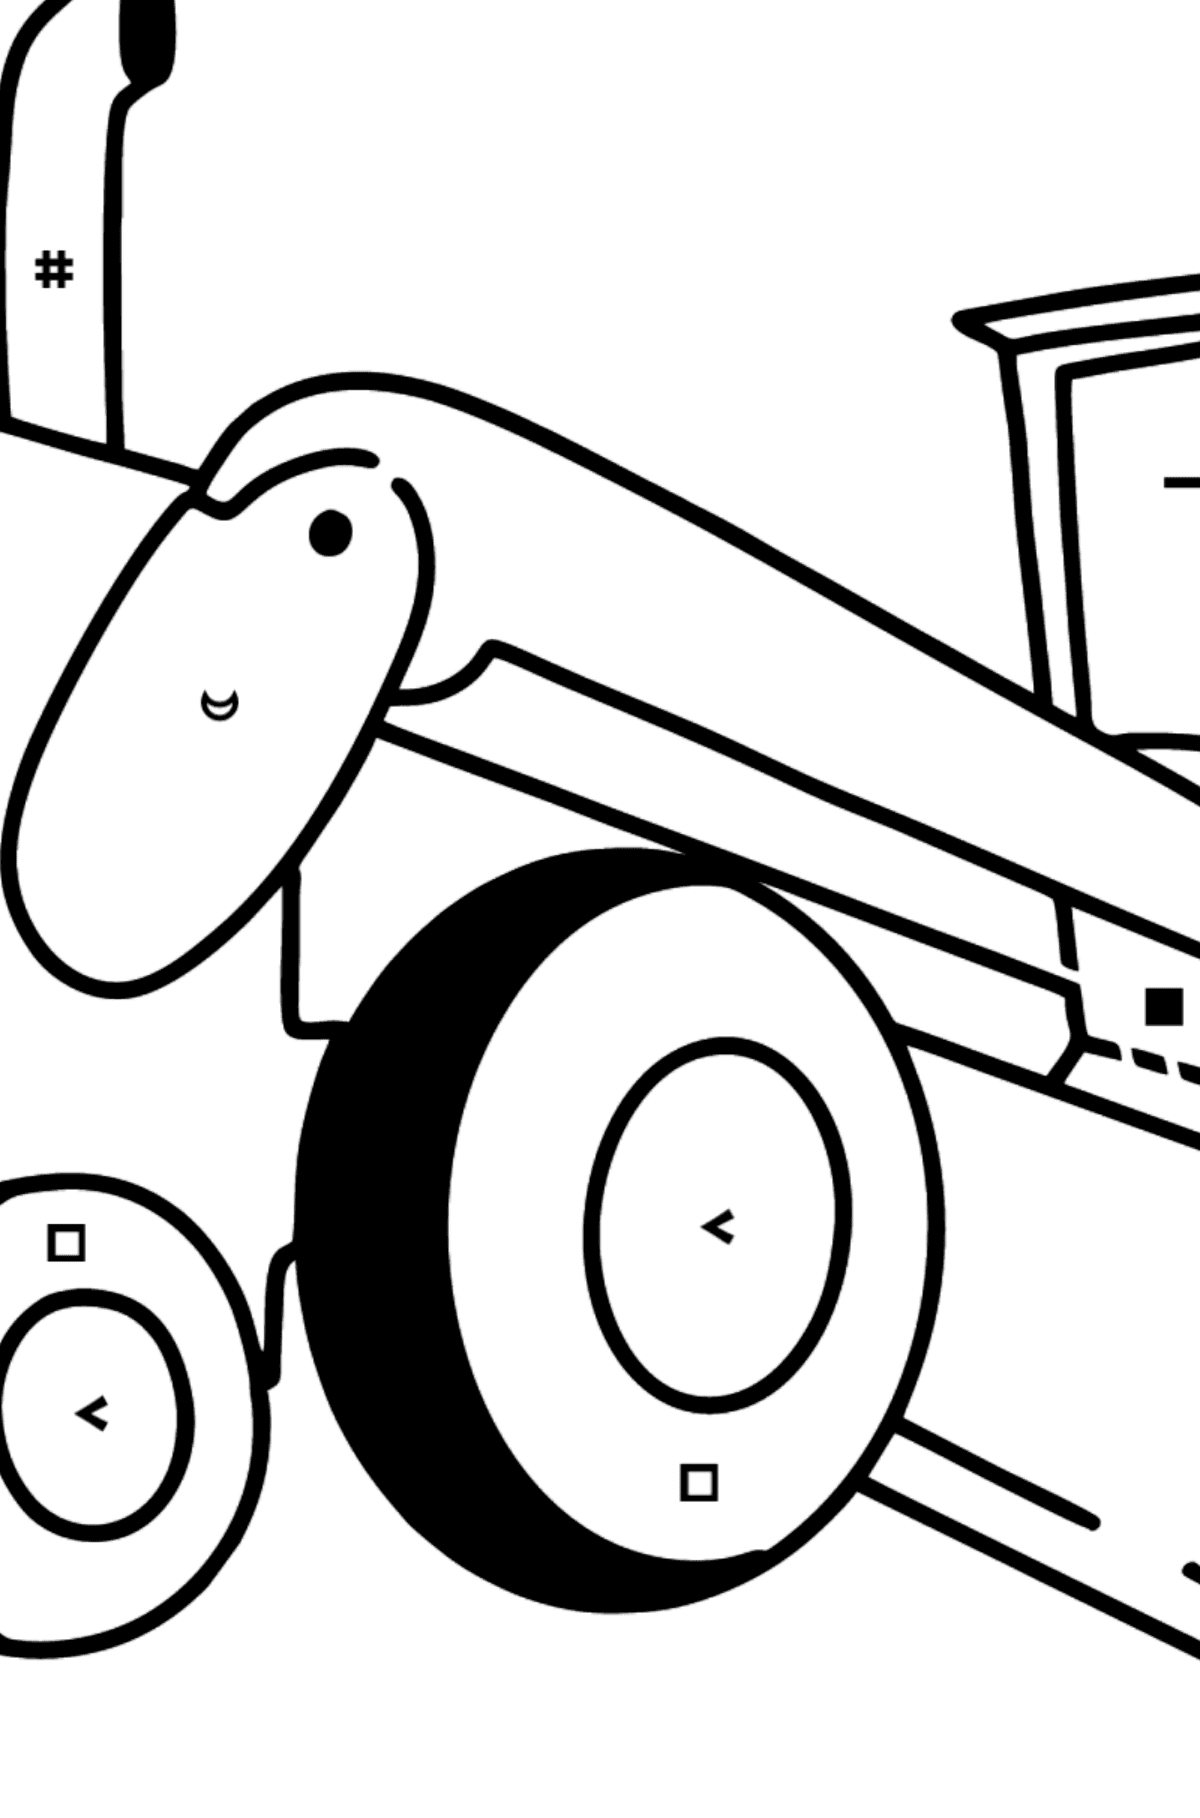 Dibujo de Tractor nivelador para colorear - Colorear por Símbolos para Niños